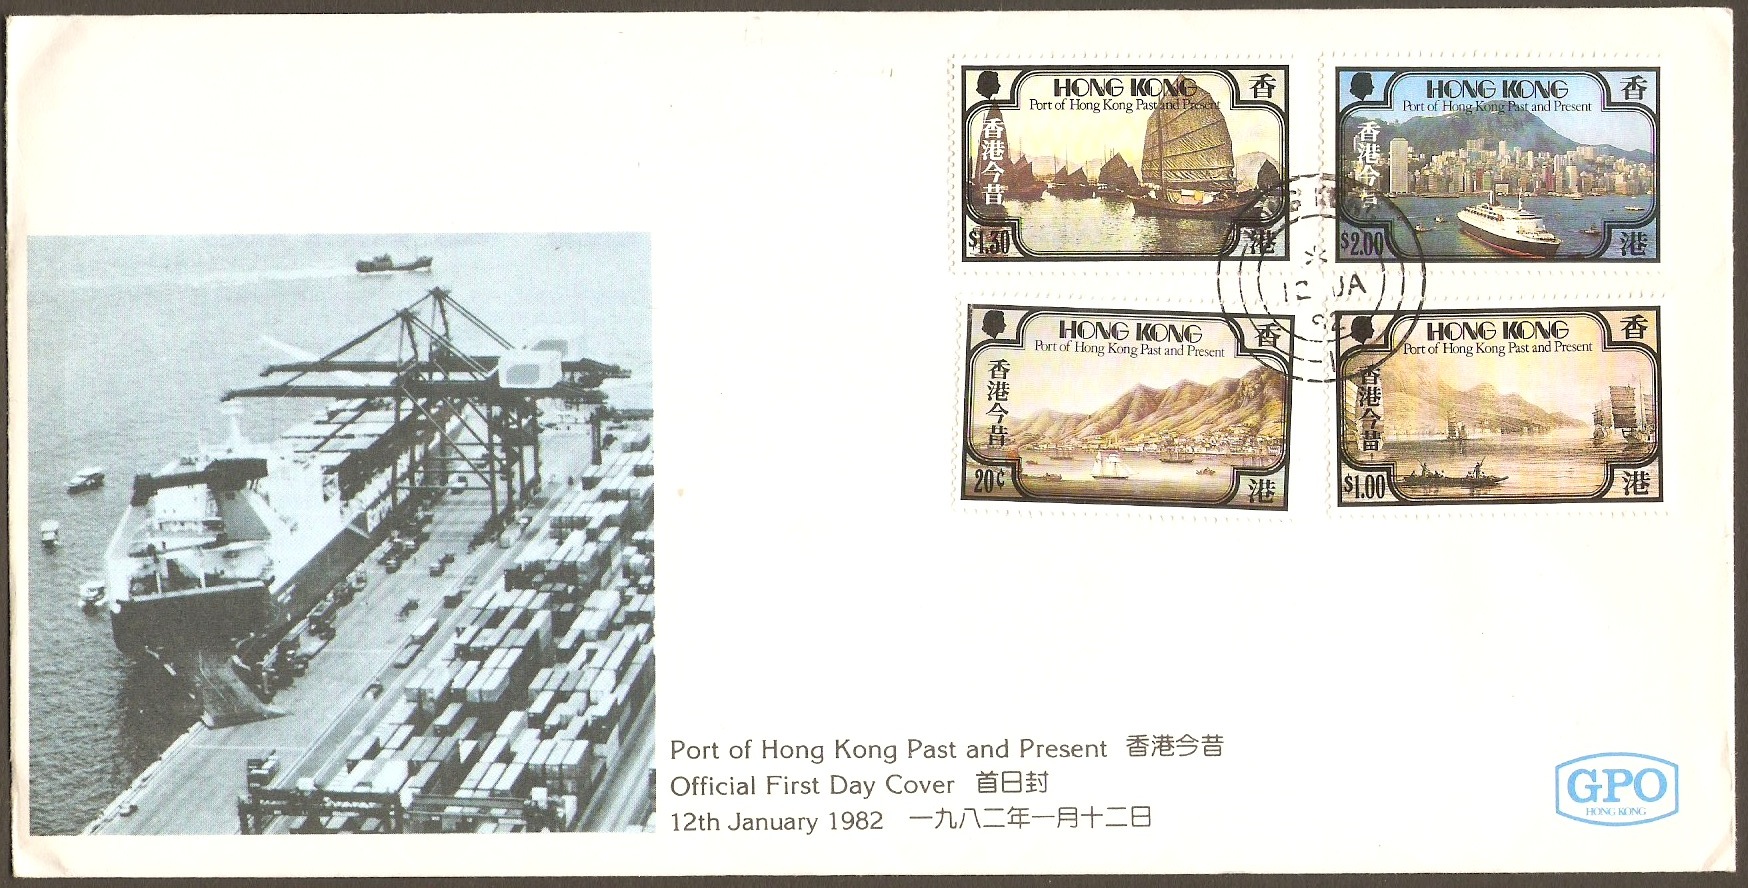 Hong Kong Postal Ephemera